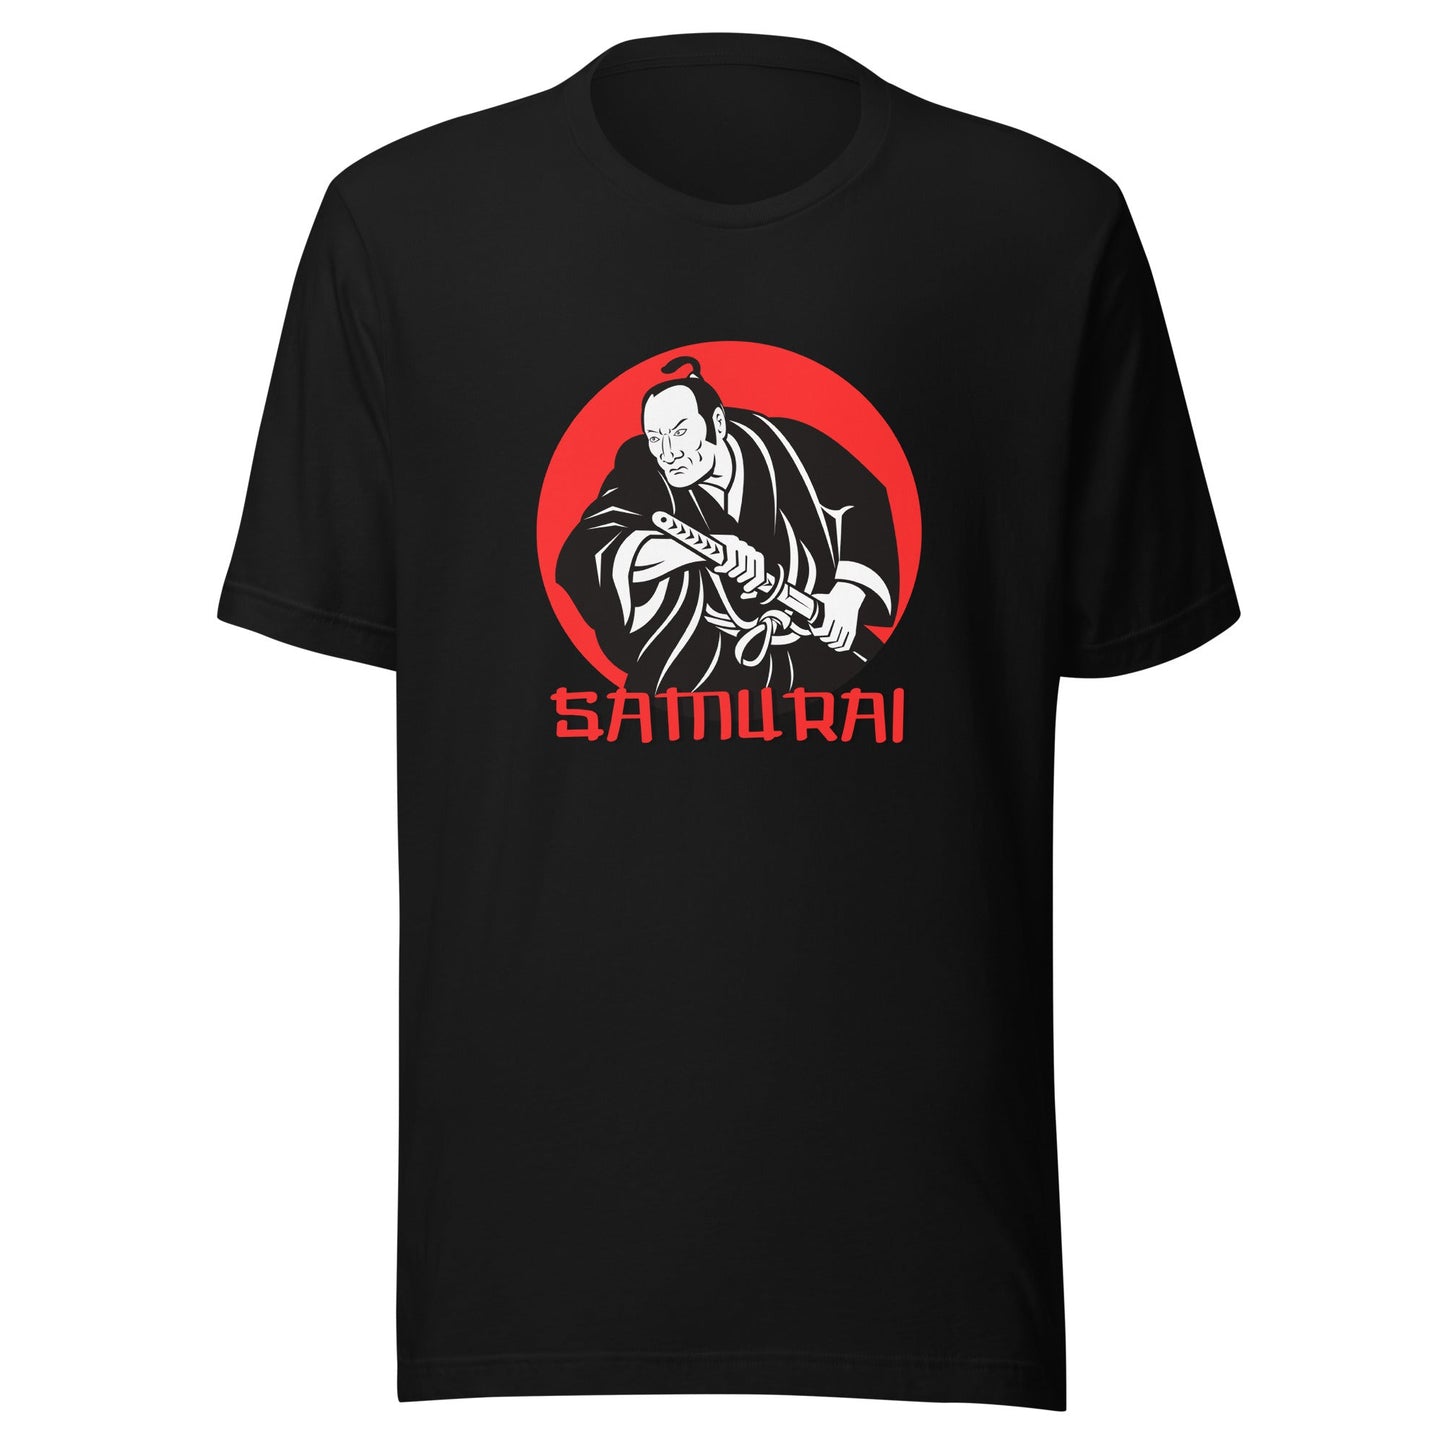 Samurai T-Shirt - Embrace the Spirit of the Legendary Warriors!